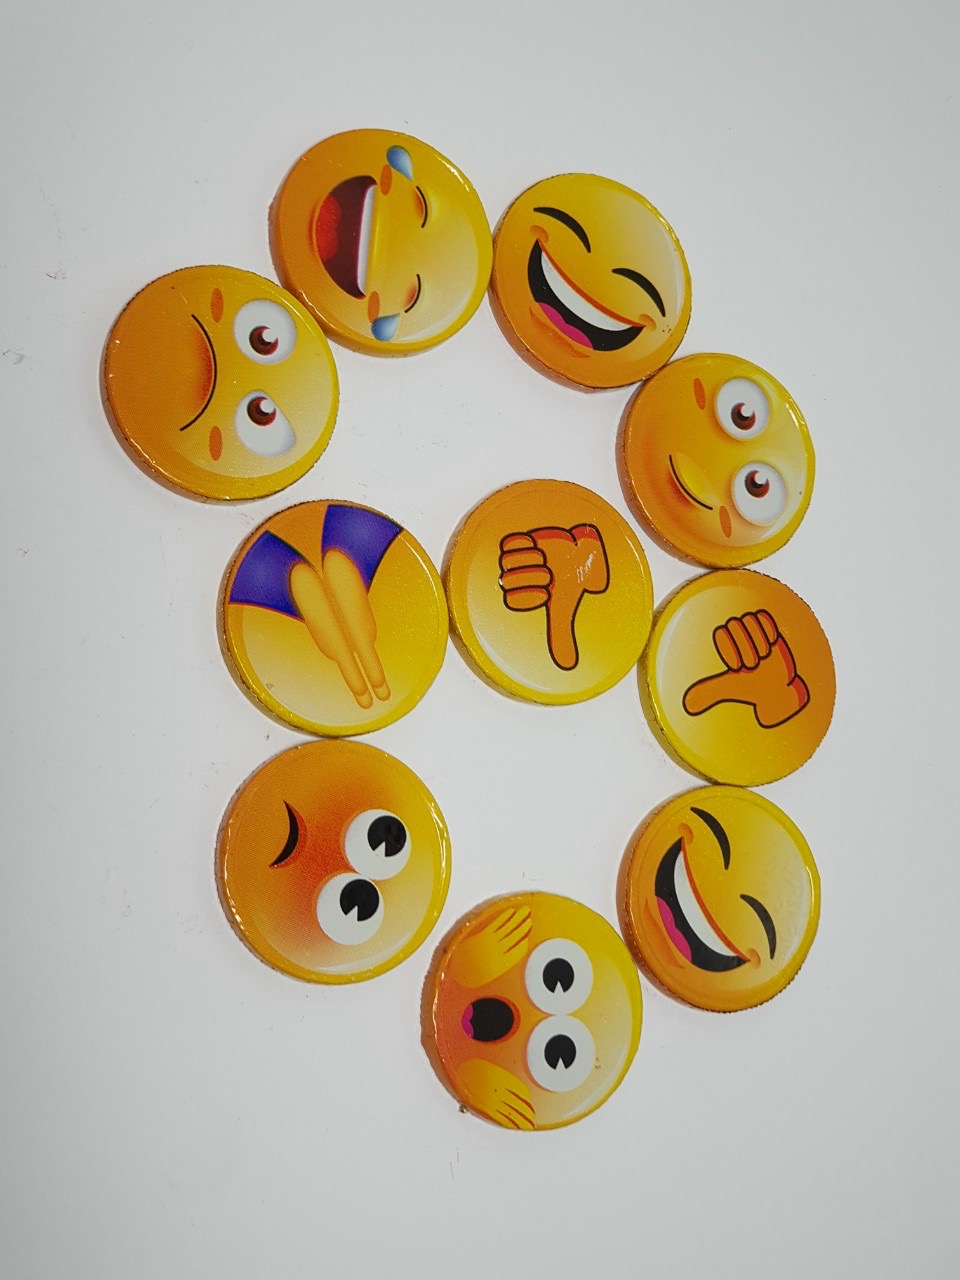 Icon Mặt Cười Dễ Thương Ngộ Nghĩnh Và Hài Hước Tổng Hợp Những Hình Mặt  Cười Đẹp  Emoji images Winking emoji Emoji